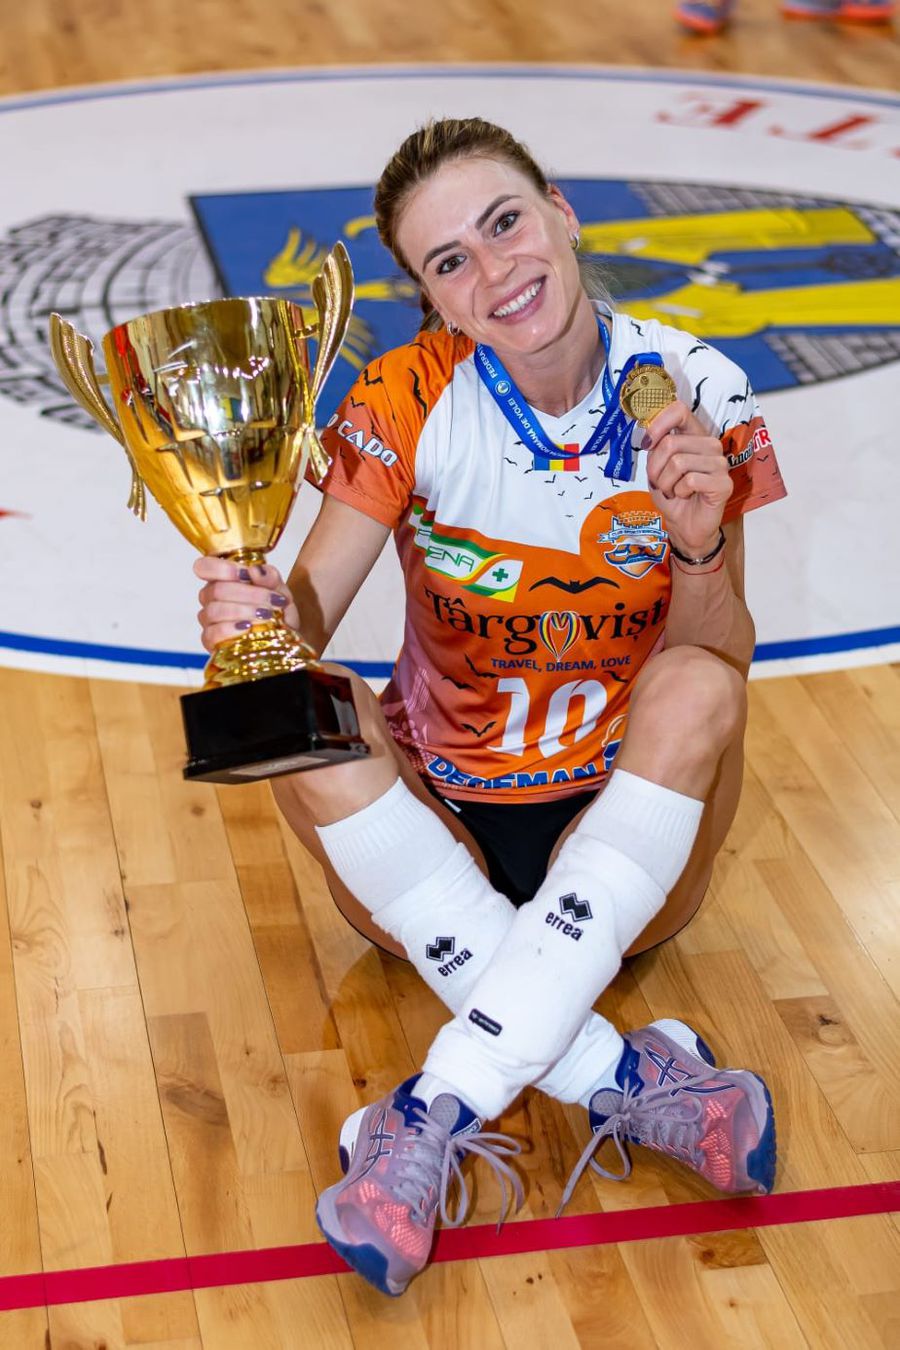 Fata care încă iubește voleiul » Alexandra Trică a jucat alături de mama ei, a refuzat oferte din străinătate, iar acum evoluează la echipa din campionat formată 100% din românce